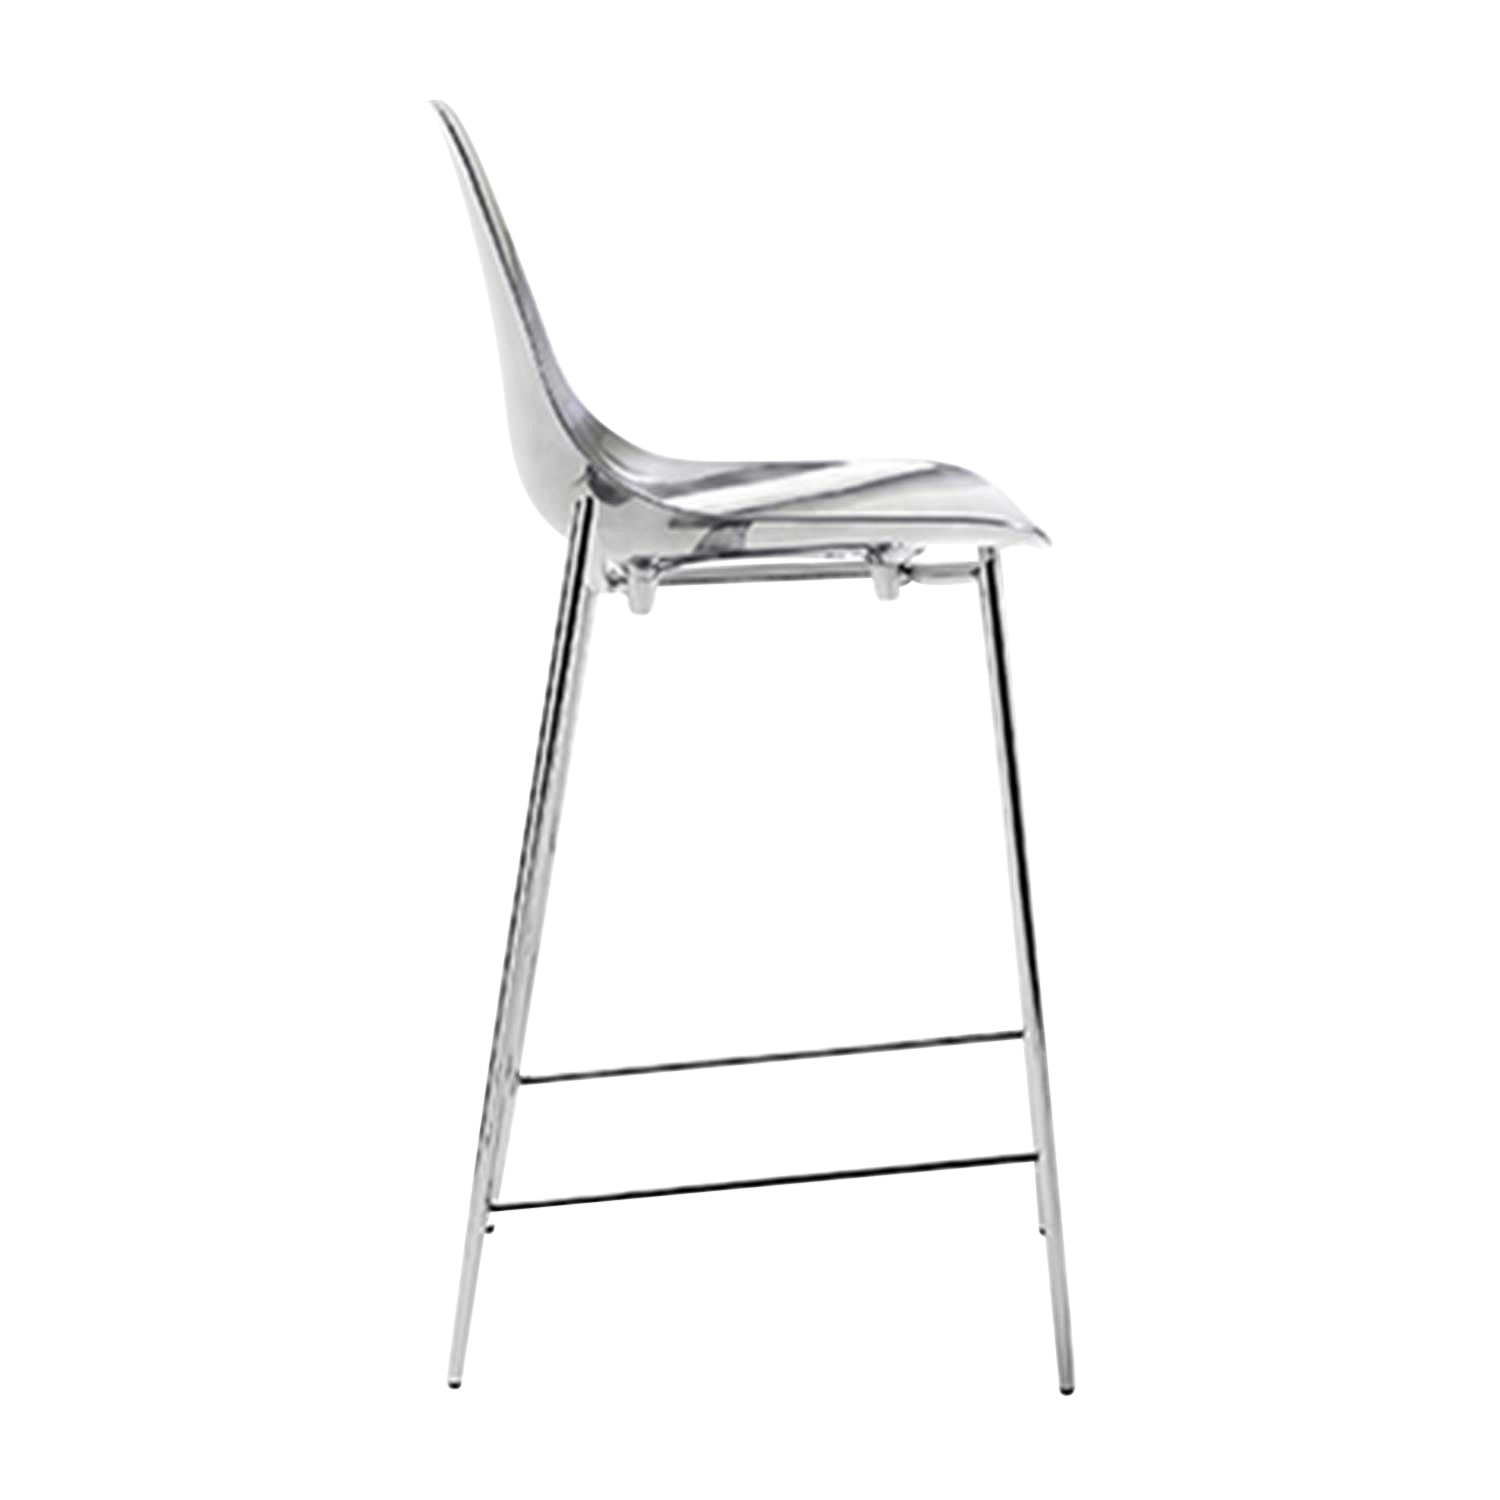 Mammamia High Barstuhl, Sitzhöhe h. 74 cm, Ausführung folie silber glänzend - ls von Opinion Ciatti